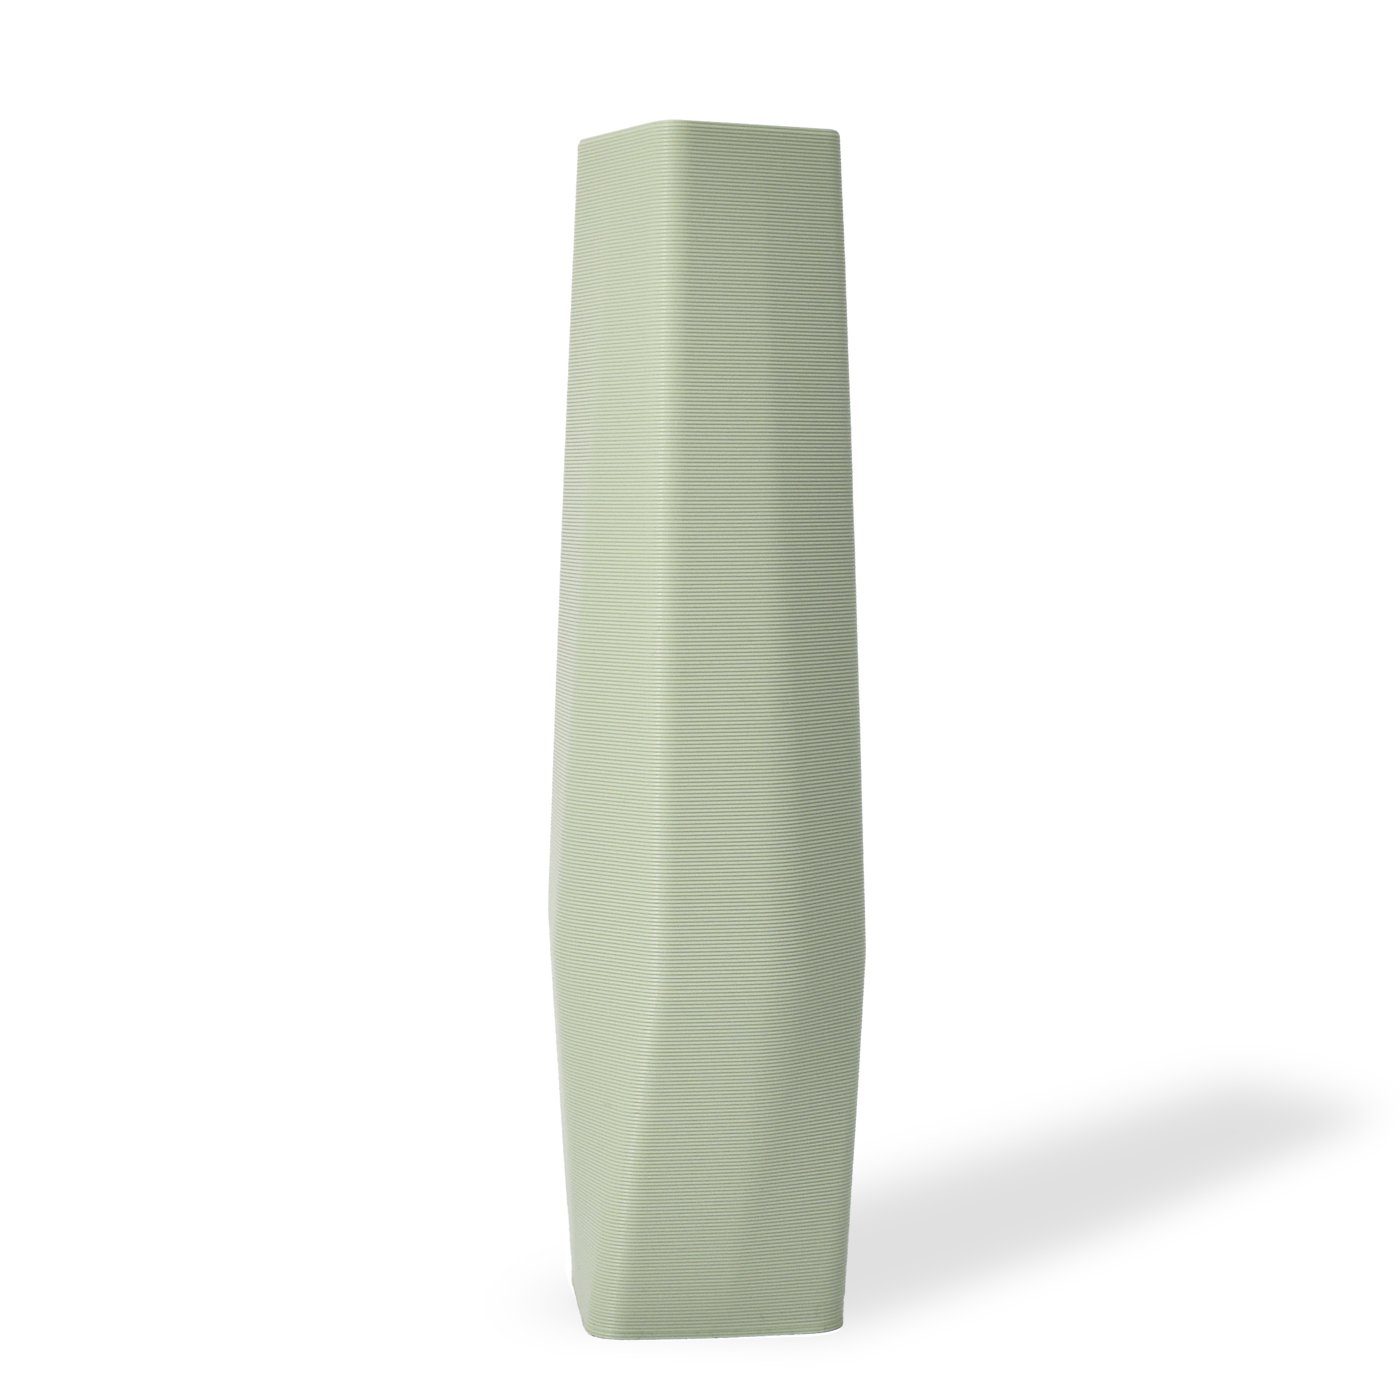 Shapes - Decorations Dekovase the vase - square (basic), 3D Vasen, viele Farben, 100% 3D-Druck (Einzelmodell, 1 Vase), Wasserdicht; Leichte Struktur innerhalb des Materials (Rillung) Mintgrün